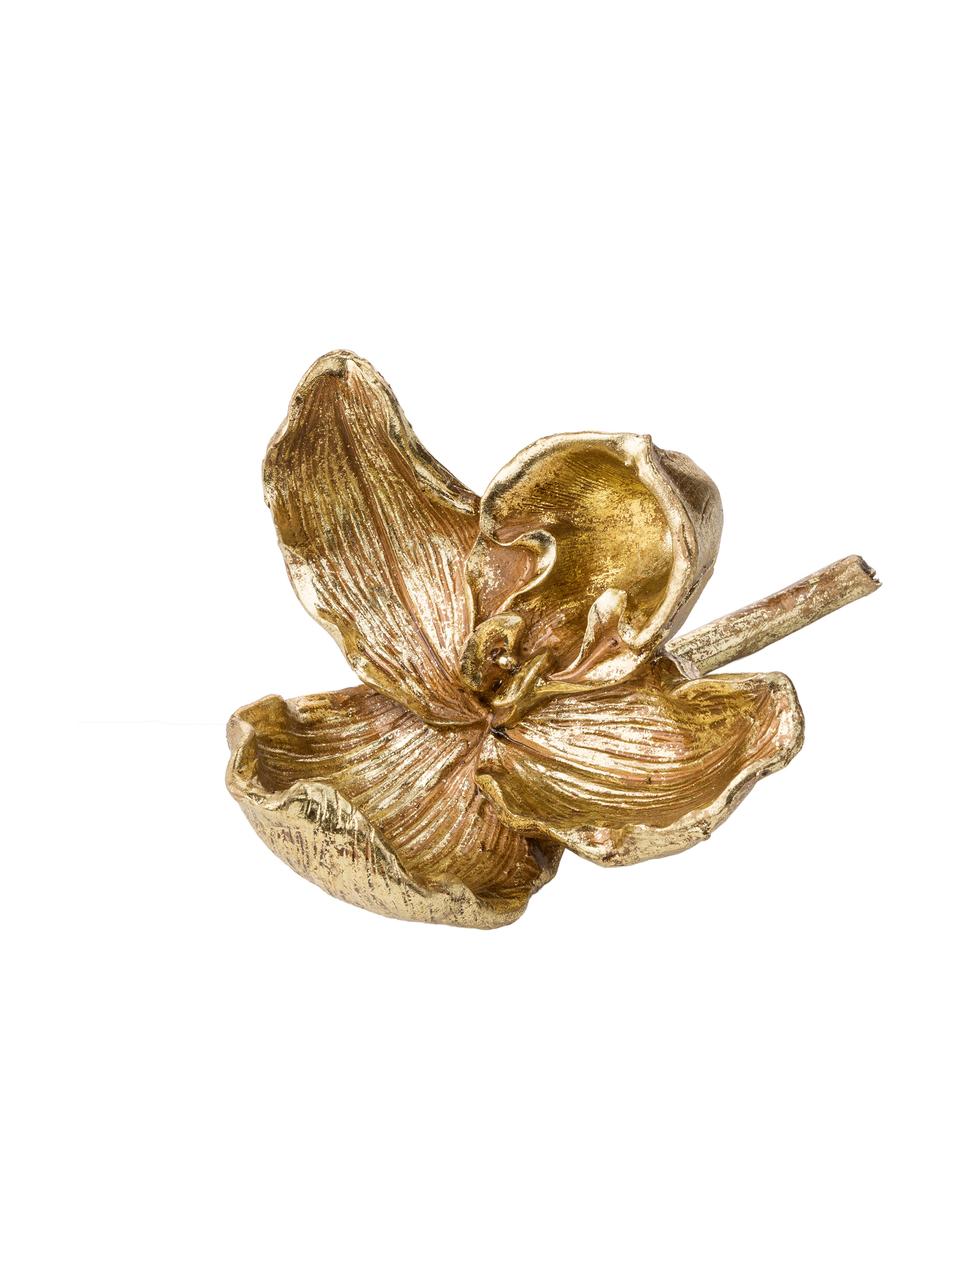 Dekoracja Flower, Poliresing, Odcienie złotego, S 14 x W 20 cm